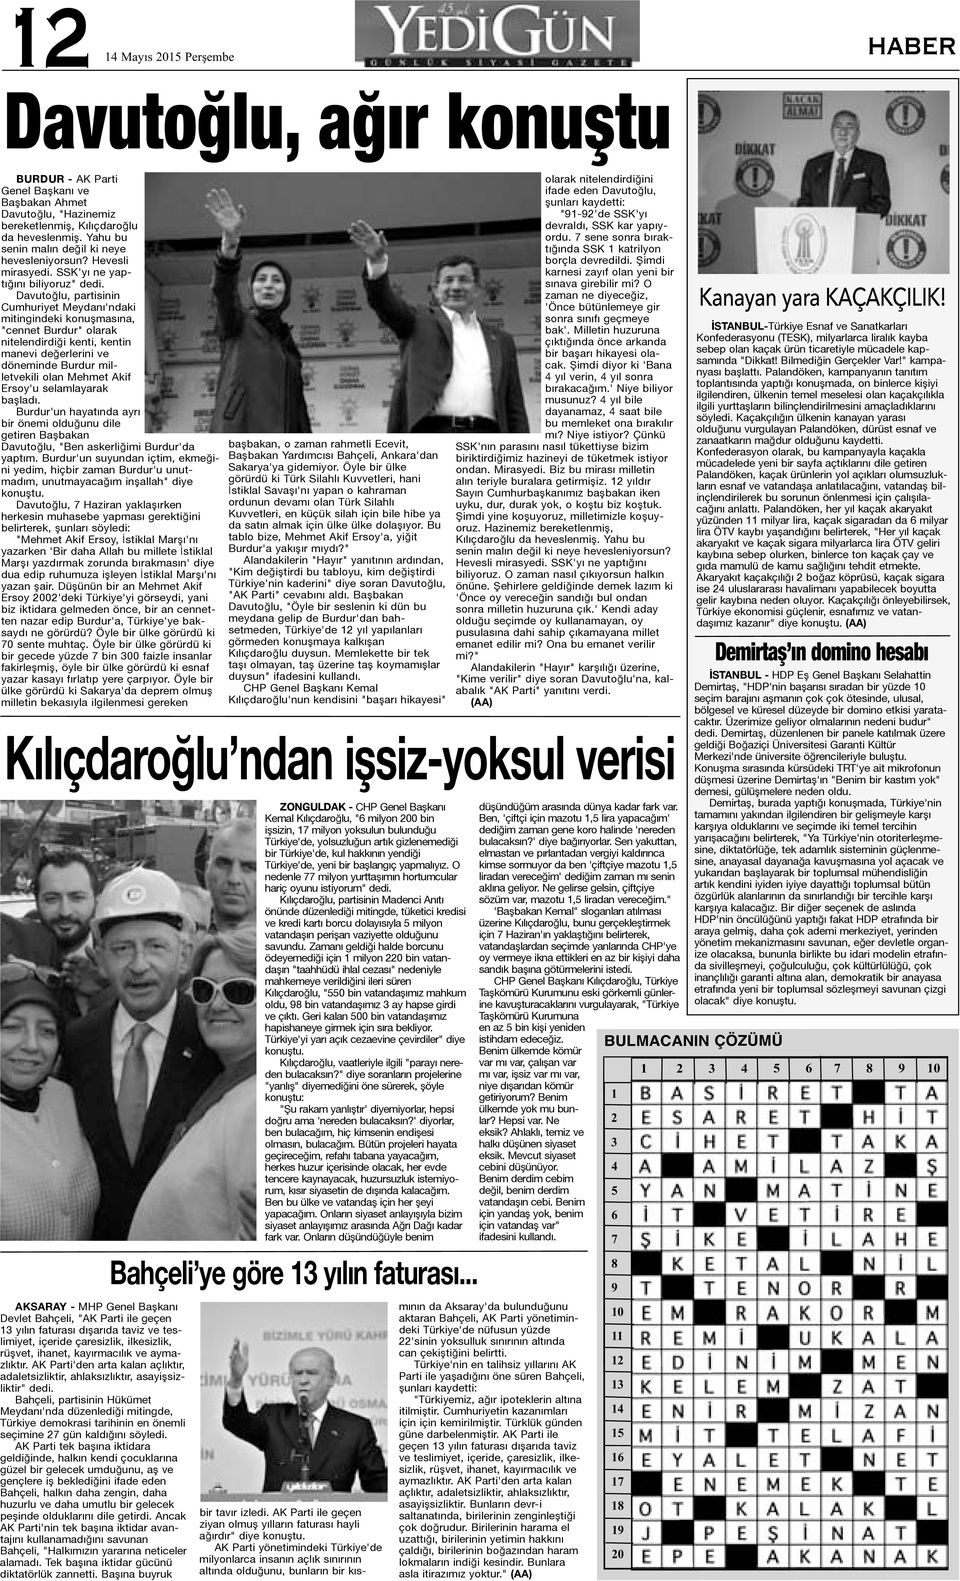 Davutoğlu, partisinin Cumhuriyet Meydanı'ndaki mitingindeki konuşmasına, "cennet Burdur" olarak nitelendirdiği kenti, kentin manevi değerlerini ve döneminde Burdur milletvekili olan Mehmet Akif